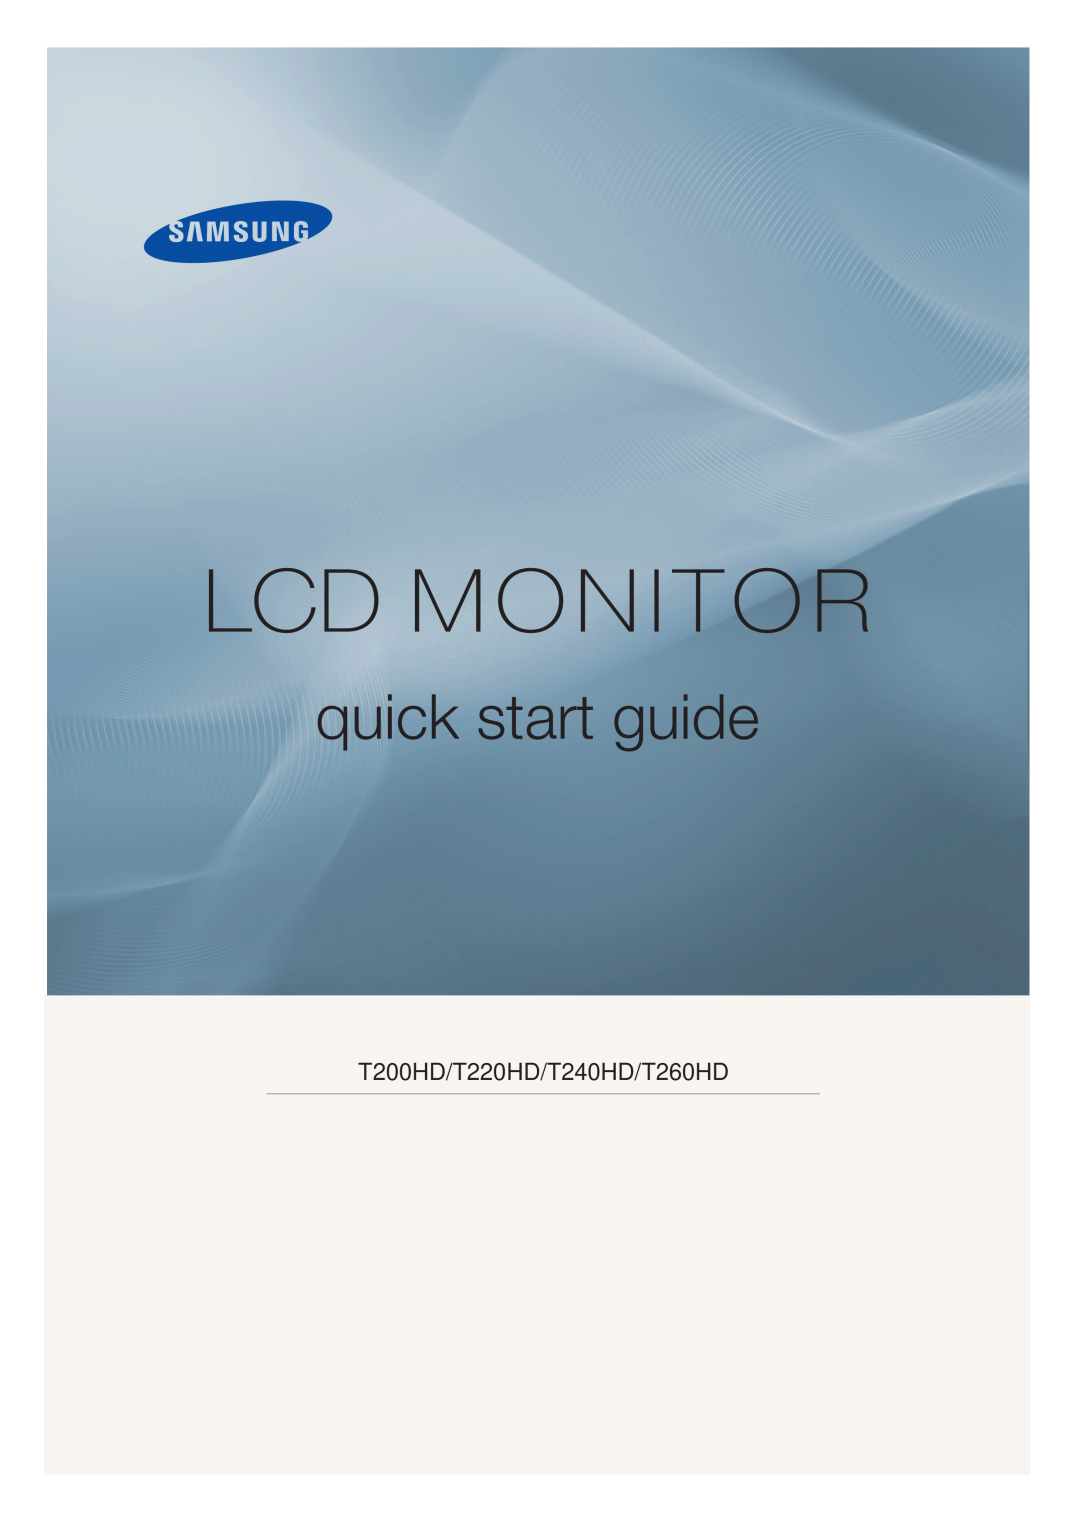 Samsung LS24TDVSUV/EN, LS20TDVSUV/EN, LS24TDDSUV/EN manual Lcd Monitor, quick start guide, T200HD/T220HD/T240HD/T260HD 